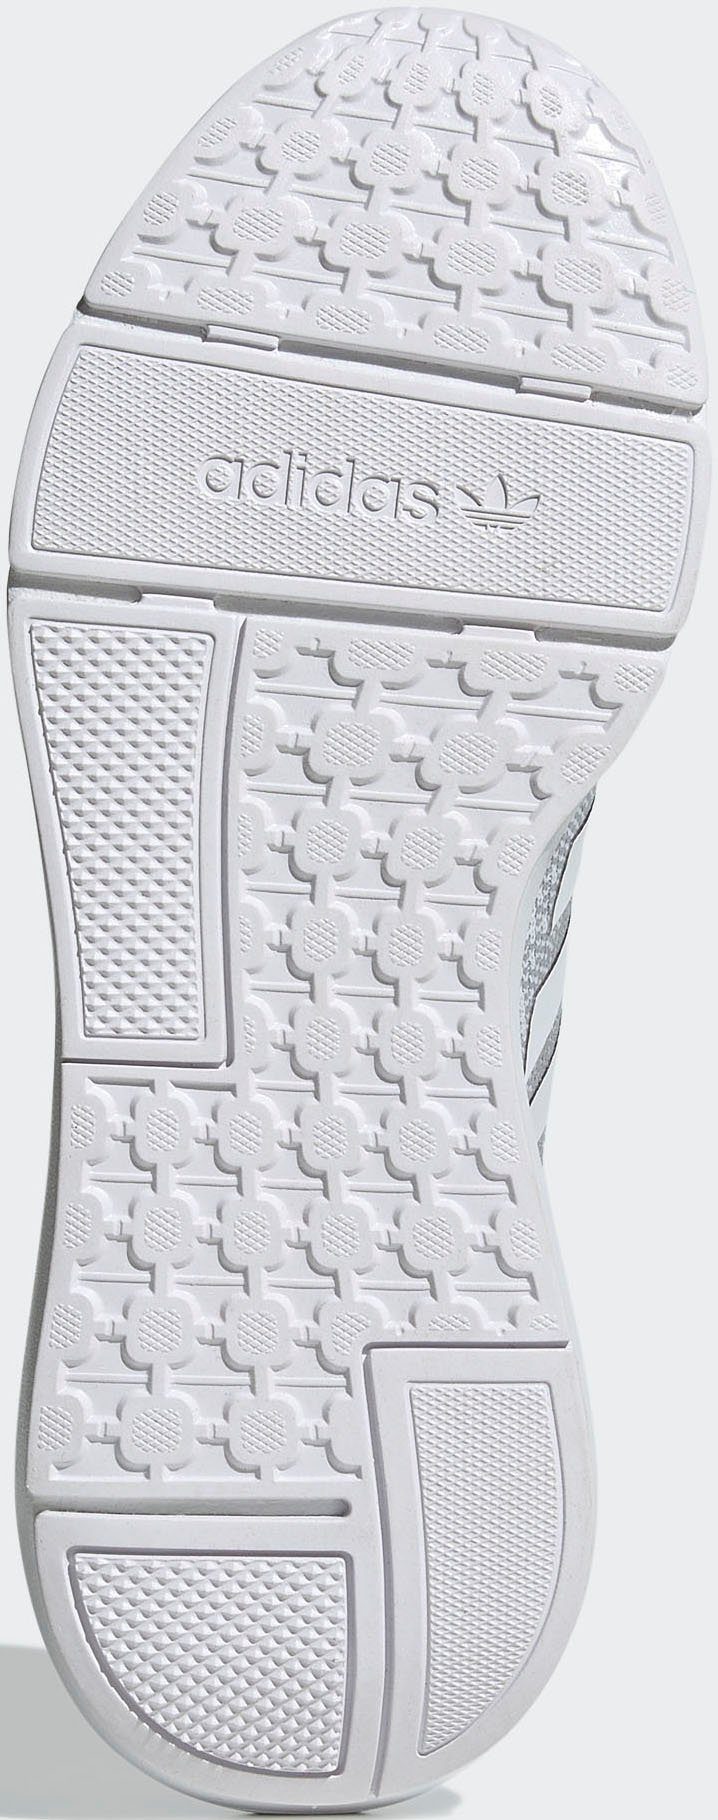 22 SWIFT Sportswear adidas FTWWHT-GRETWO-CBLACK Sneaker RUN